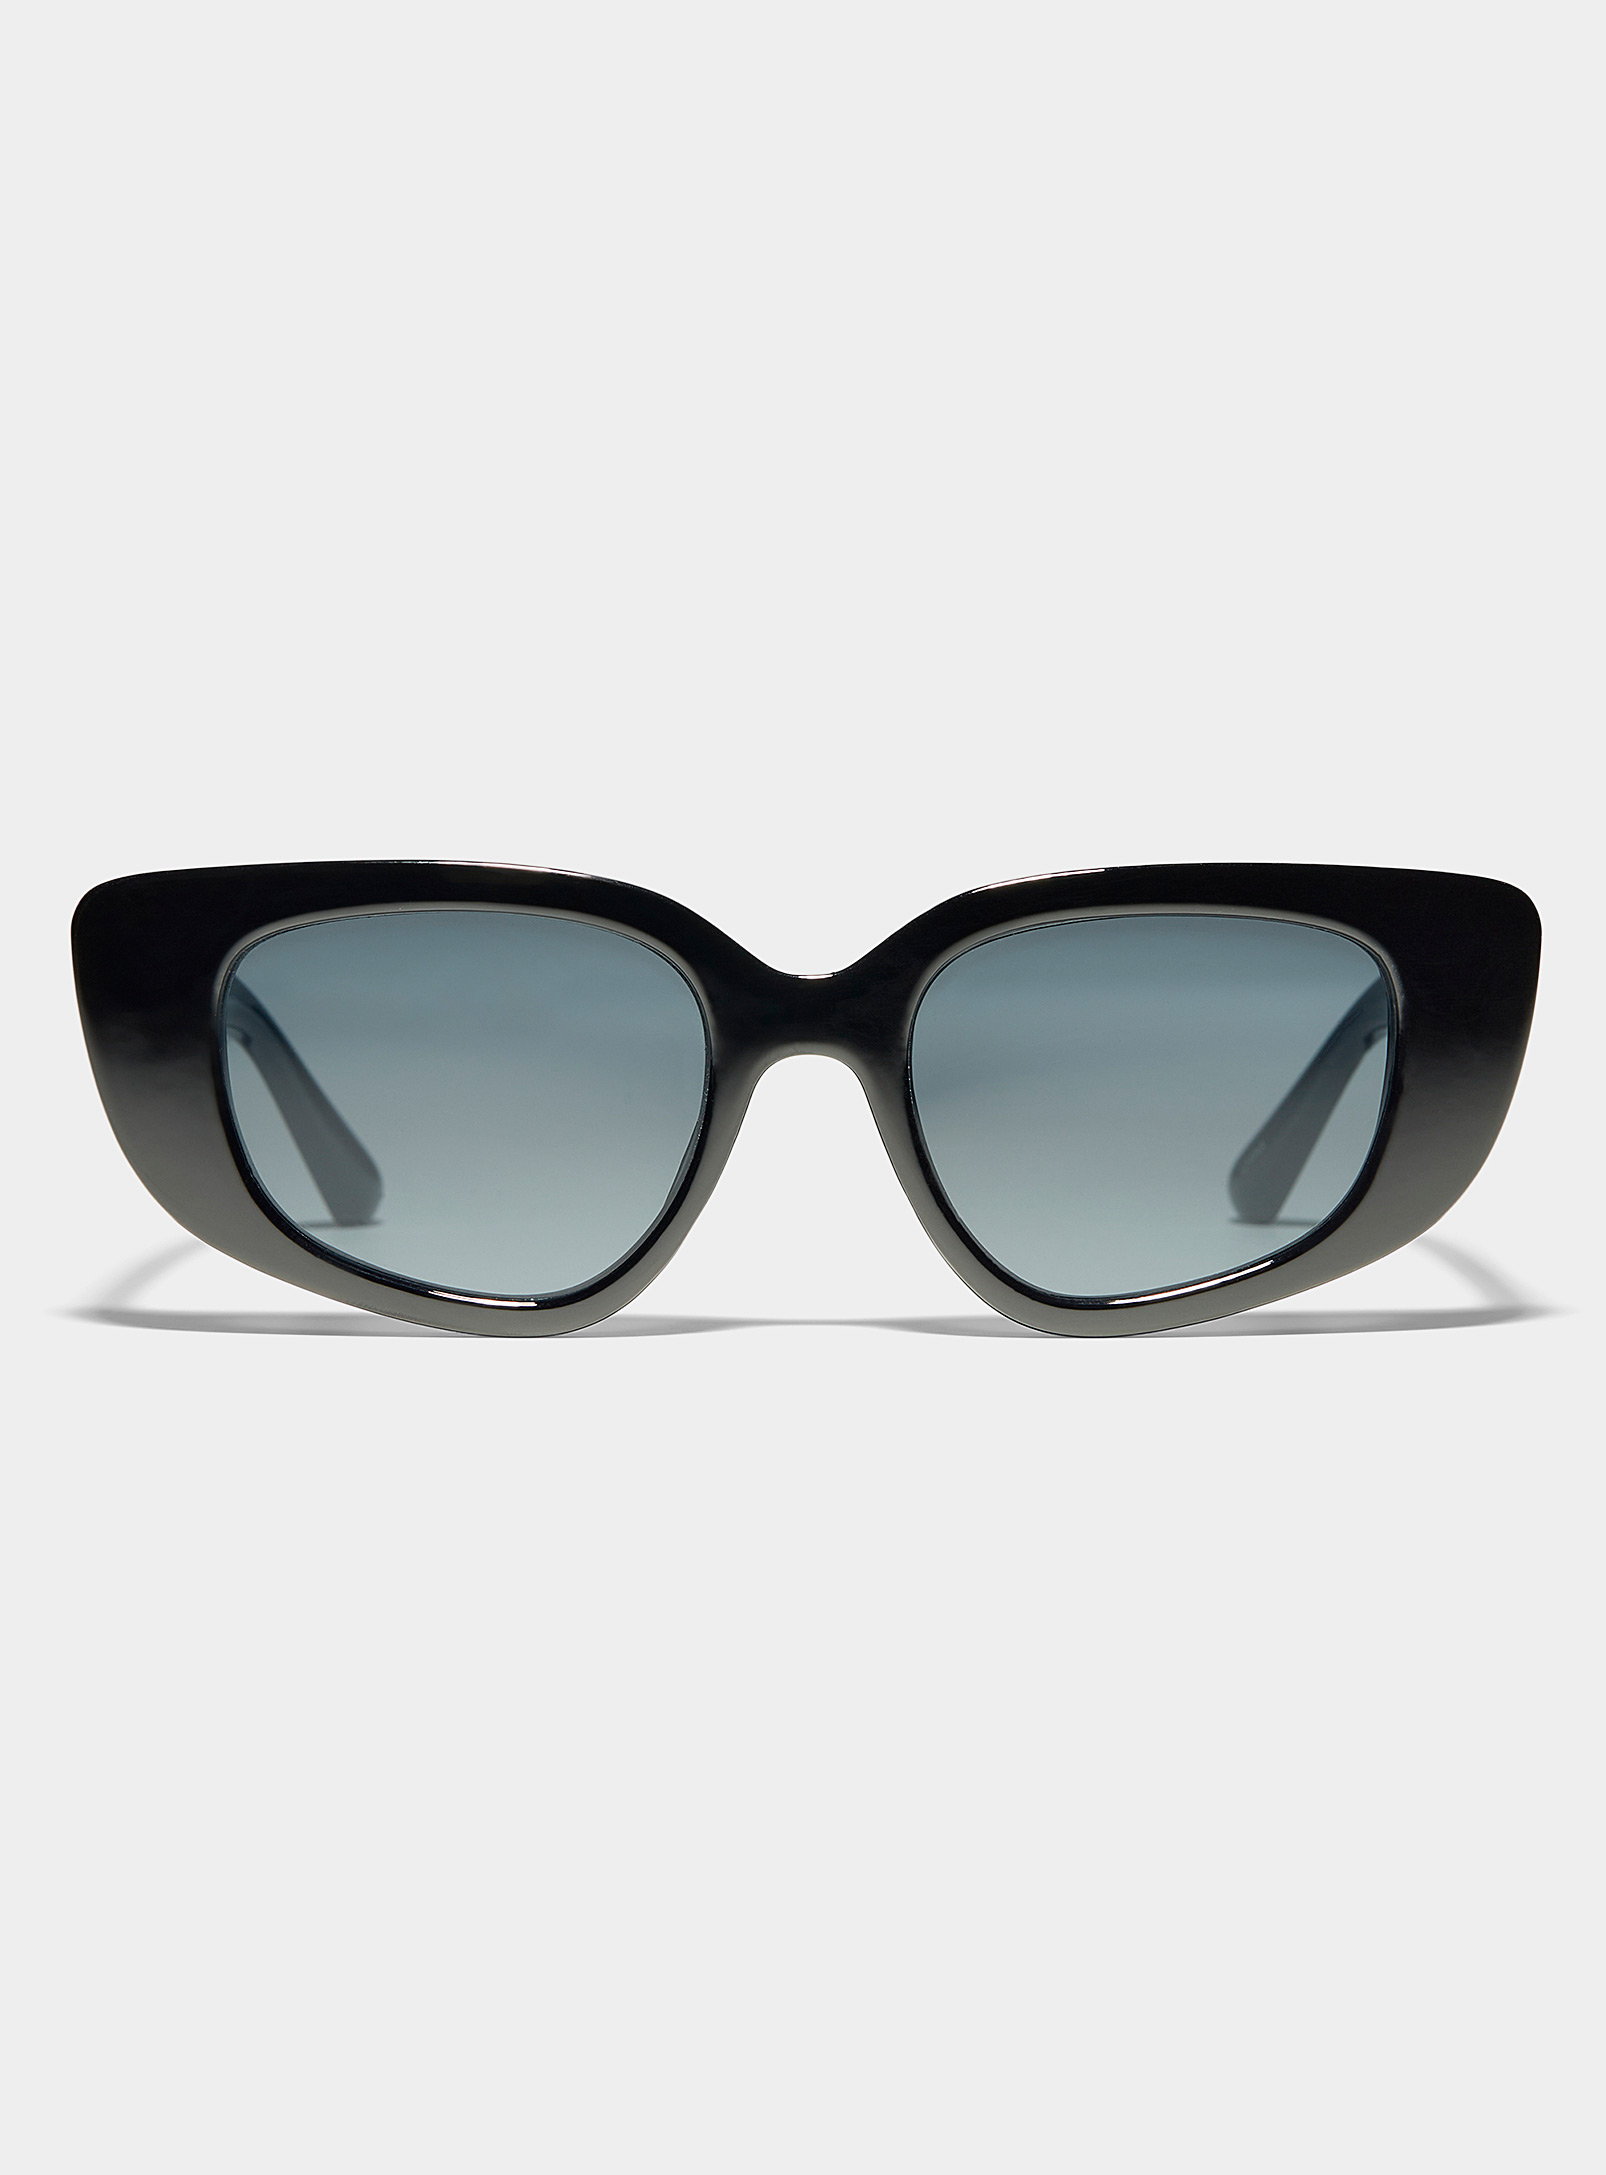 Simons - Women's Whisper abstract oval sunglasses